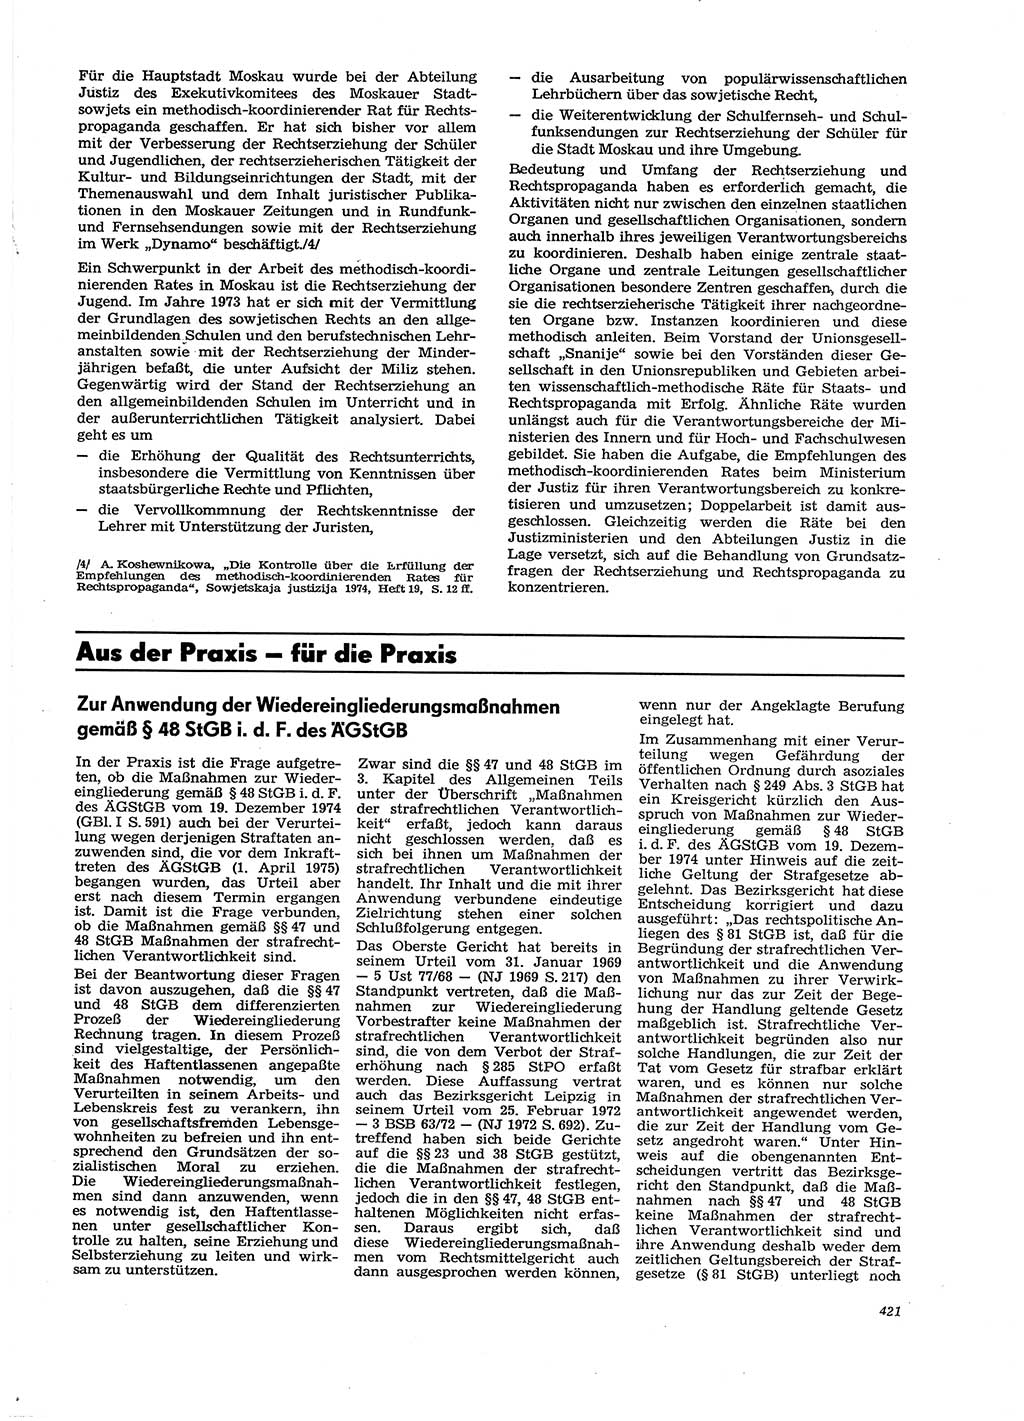 Neue Justiz (NJ), Zeitschrift für Recht und Rechtswissenschaft [Deutsche Demokratische Republik (DDR)], 29. Jahrgang 1975, Seite 421 (NJ DDR 1975, S. 421)